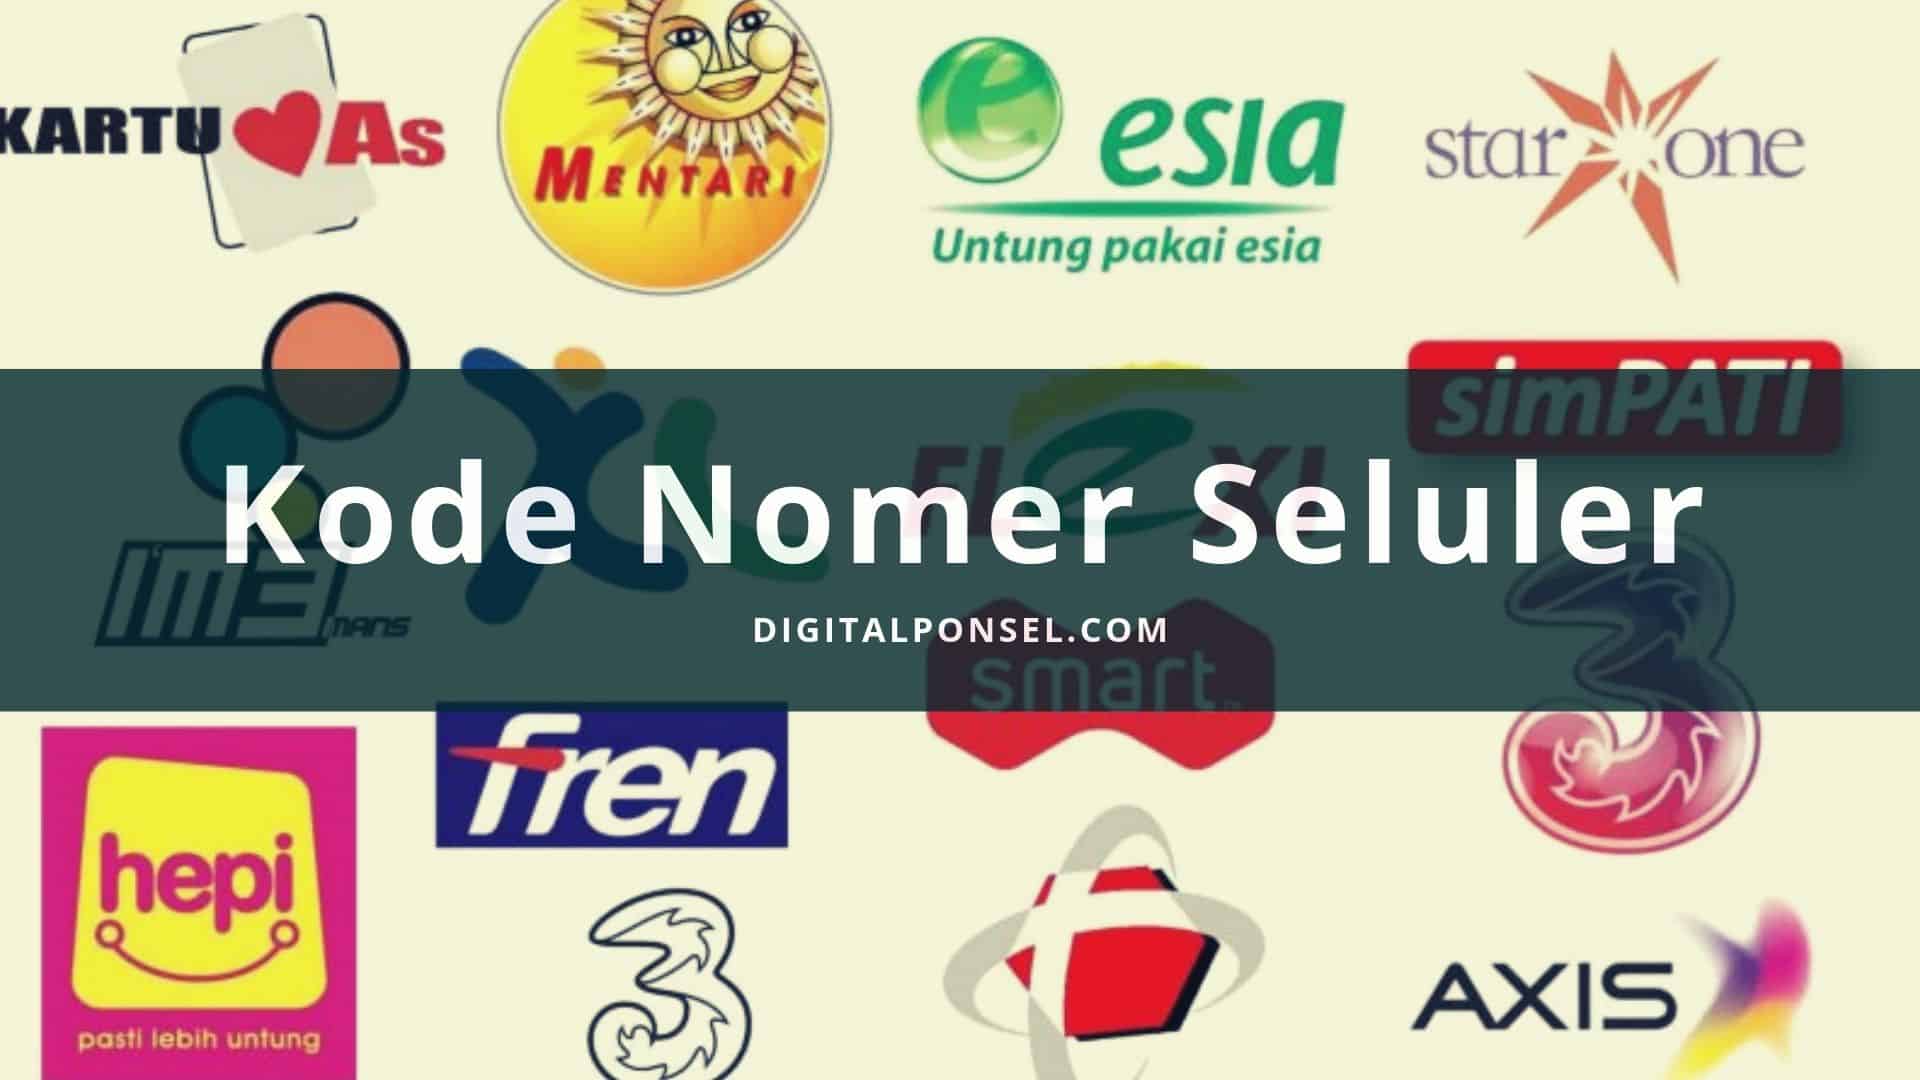 Daftar Kode Nomor Operator Seluler Lengkap di Indonesia